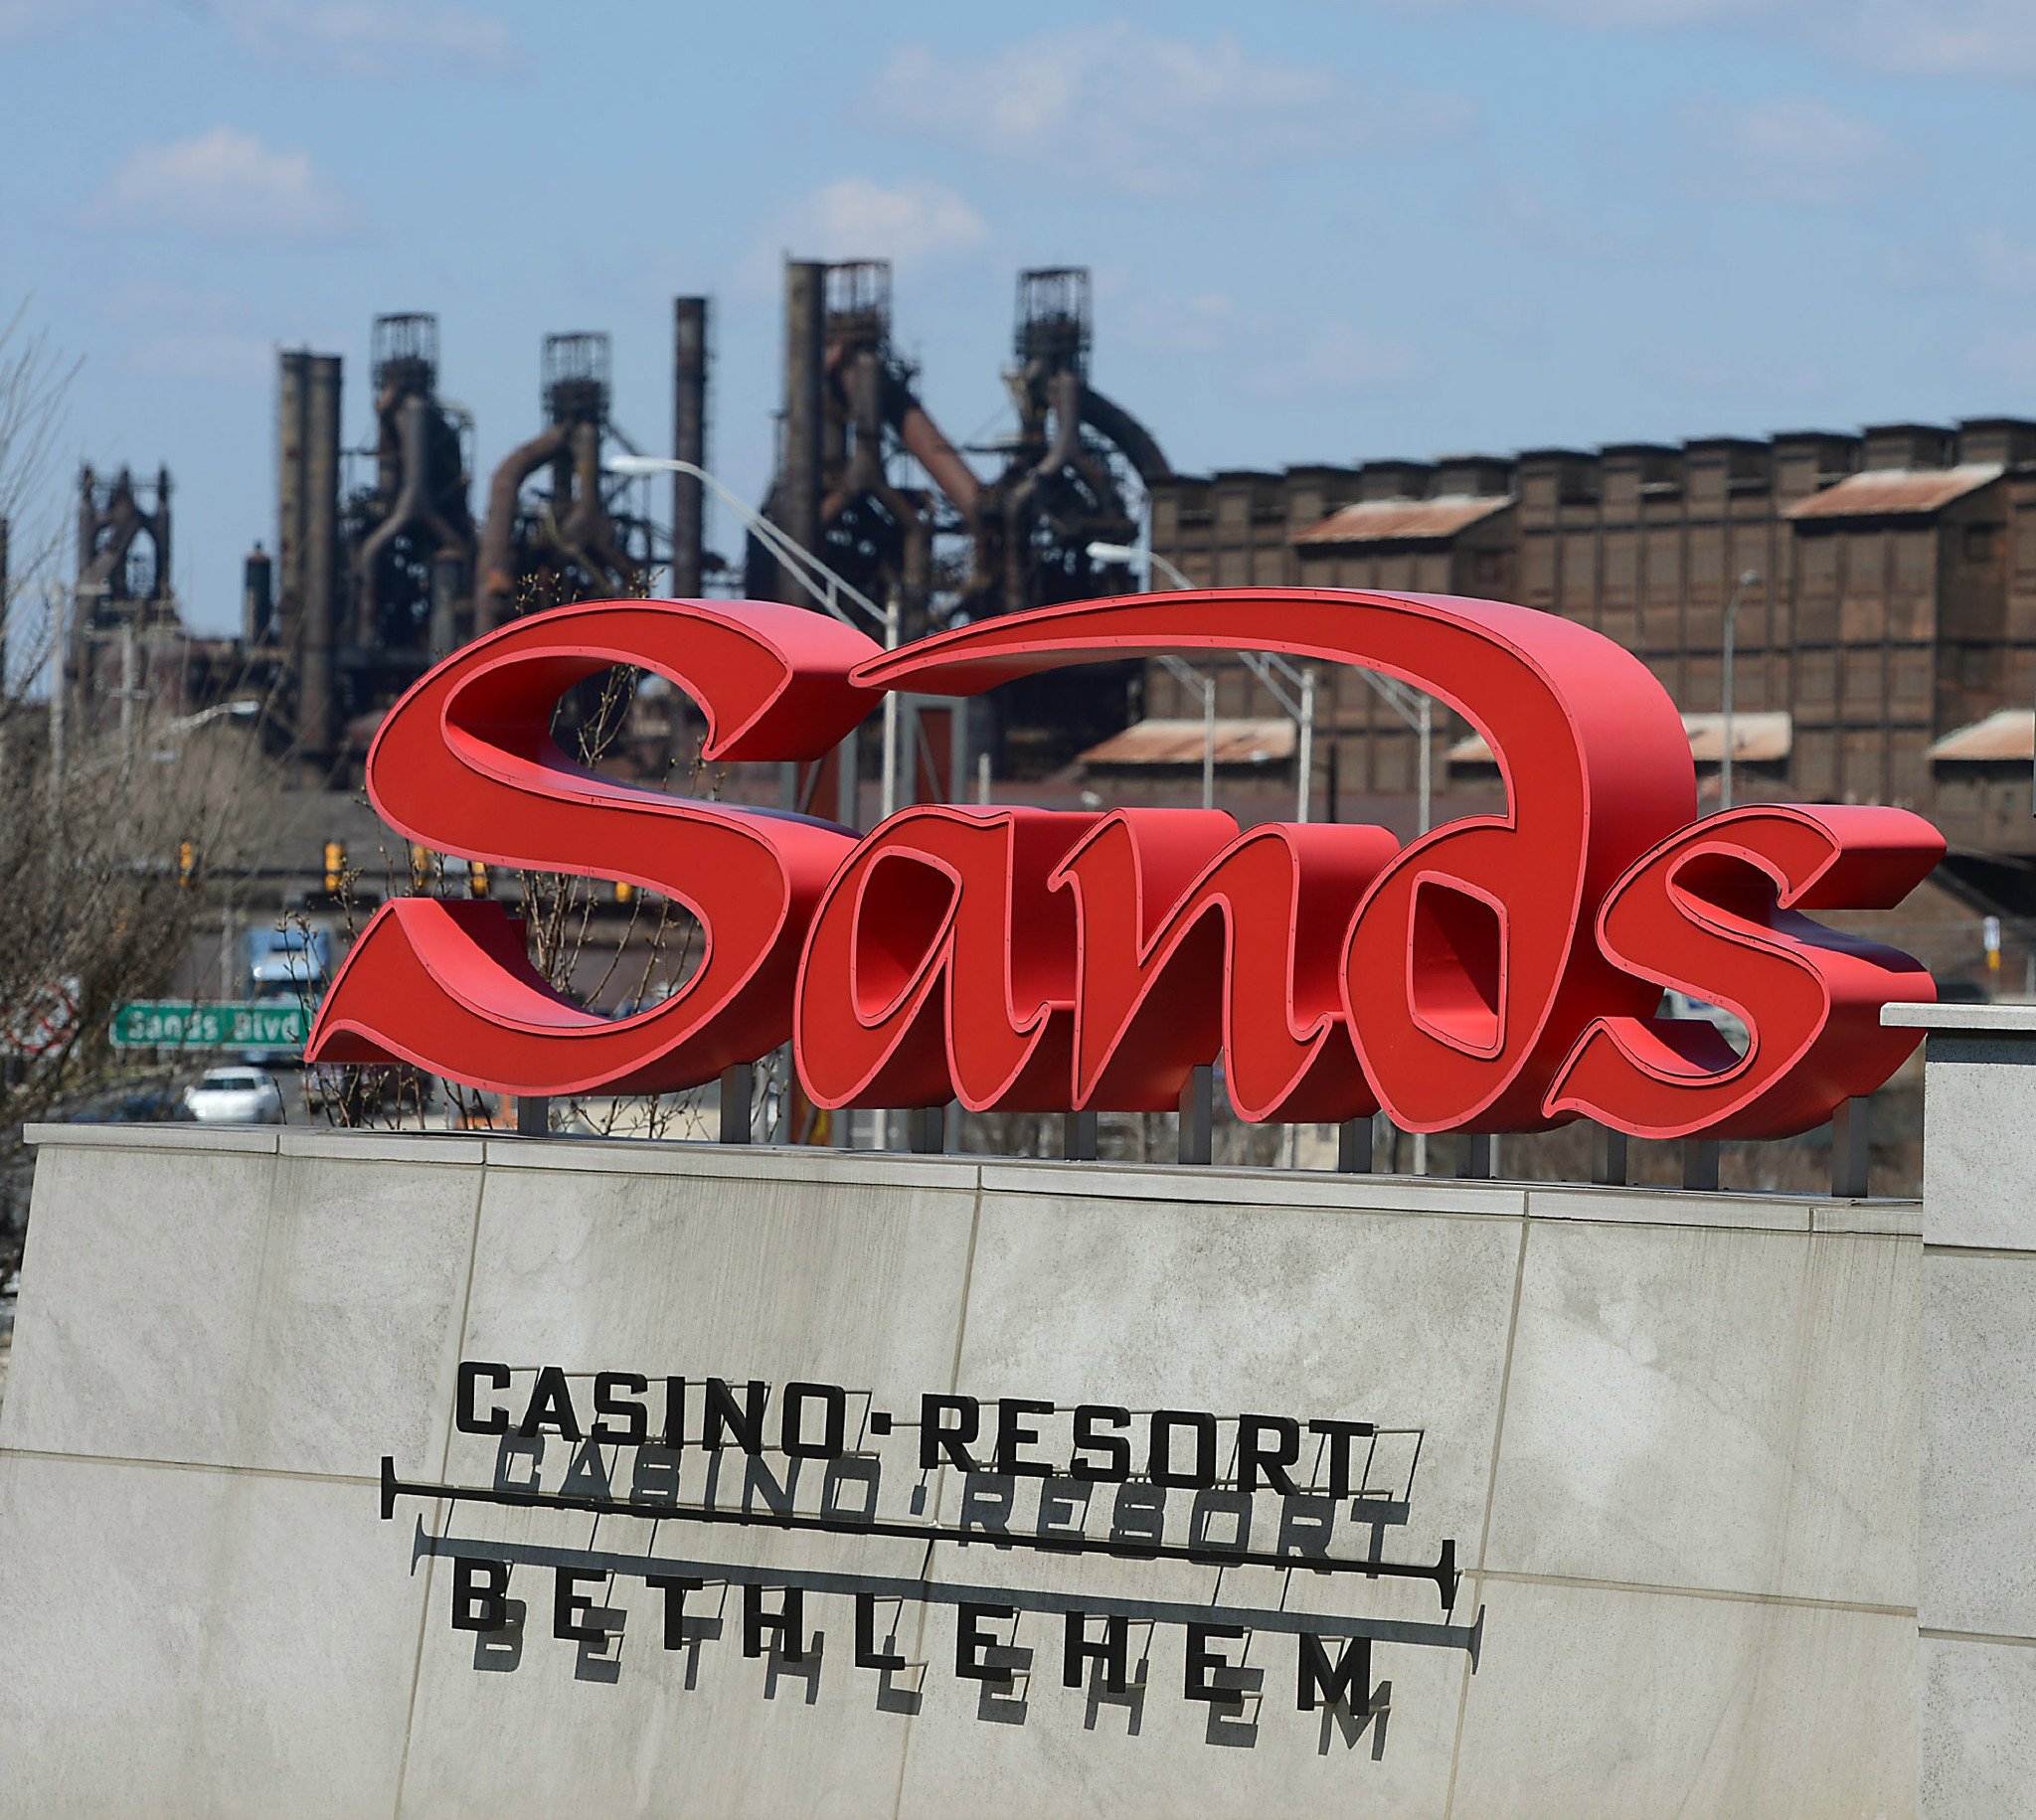 Sands Bethlehem five-year license renewal